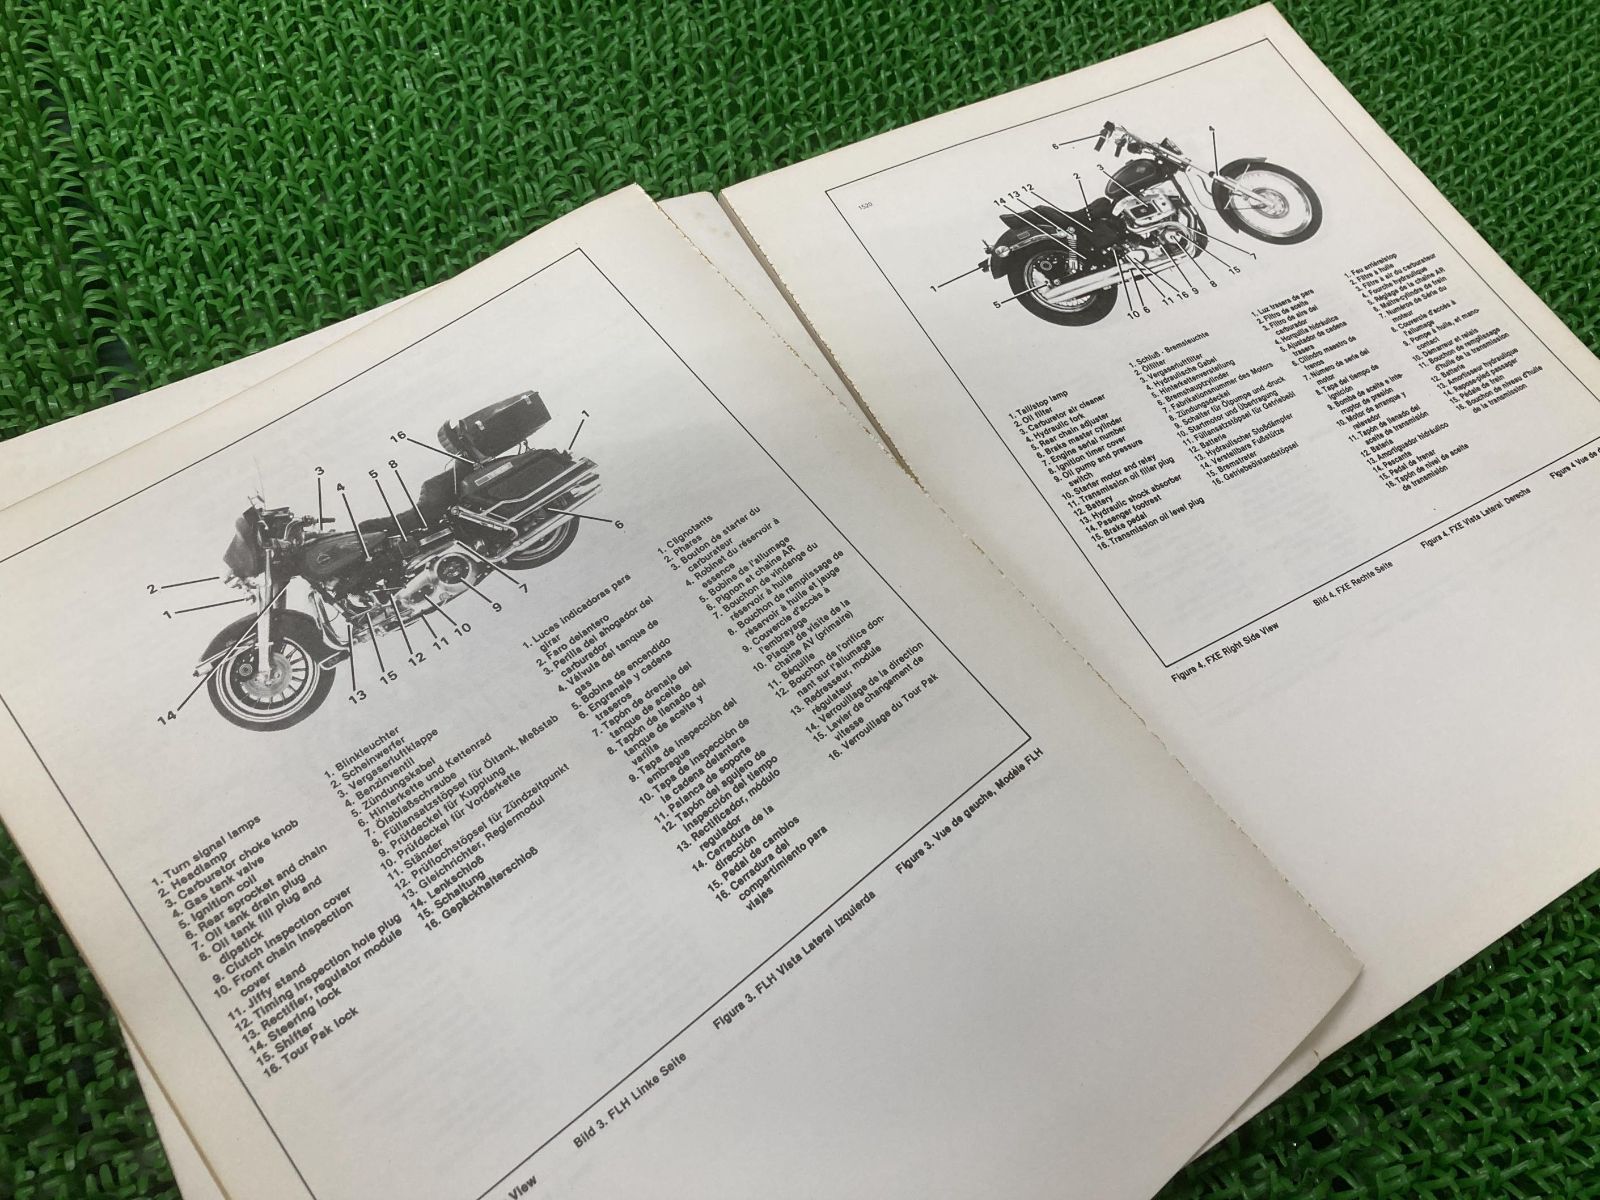 FL FX オーナーズマニュアル ハーレー 正規  バイク 整備書 1982年モデル 英語 ドイツ語 車検 パーツカタログ 整備書:22292614